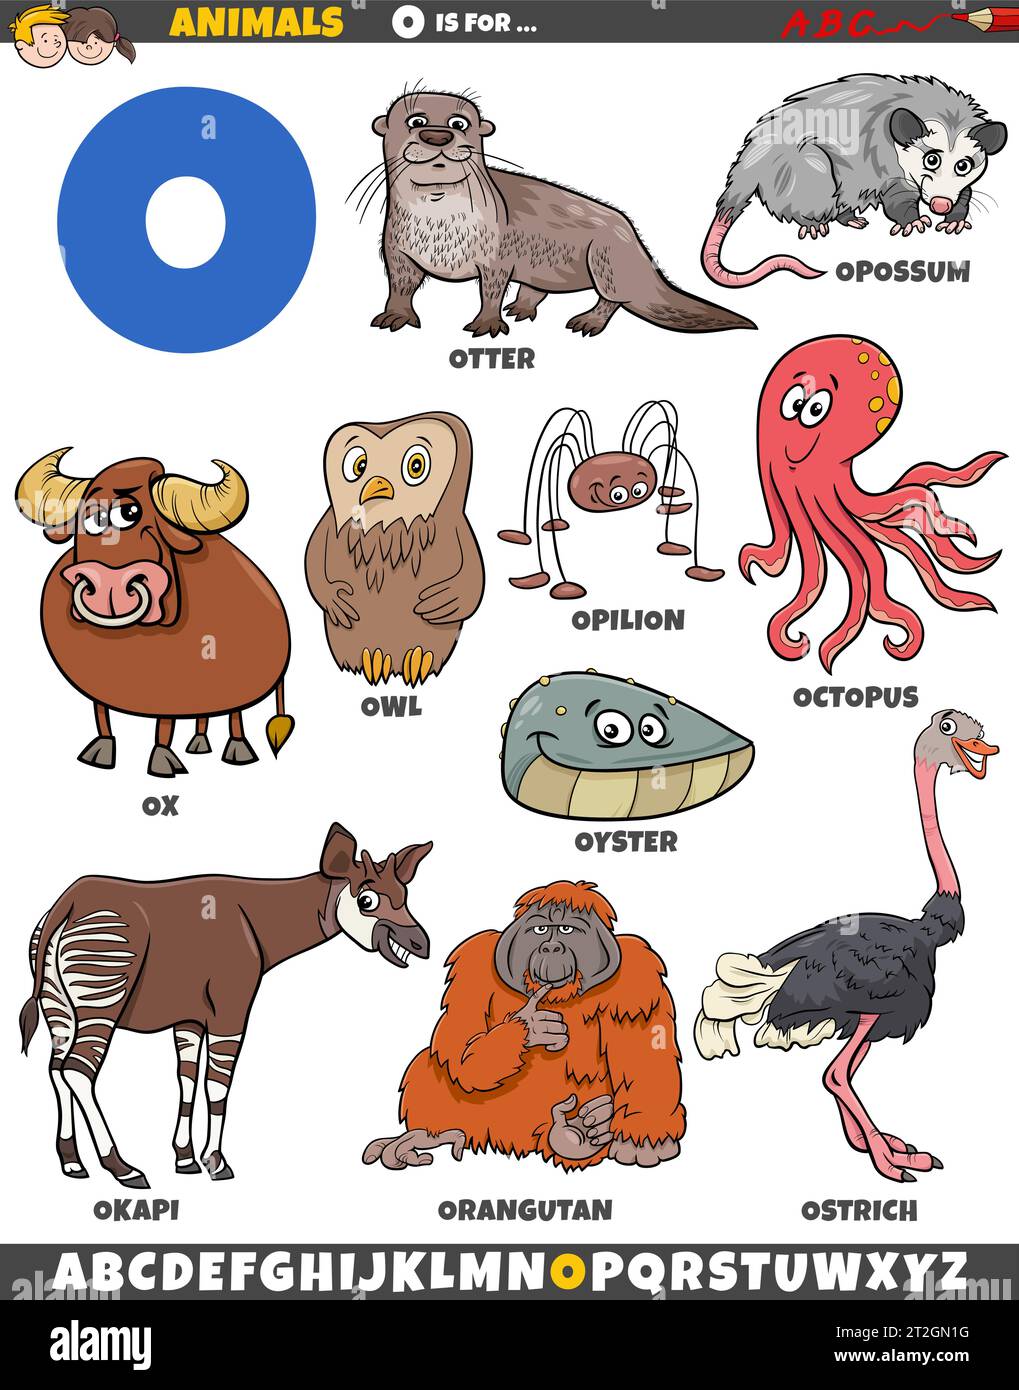 Zeichentrickillustration von Tierfiguren, die für den Buchstaben O gesetzt sind Stock Vektor